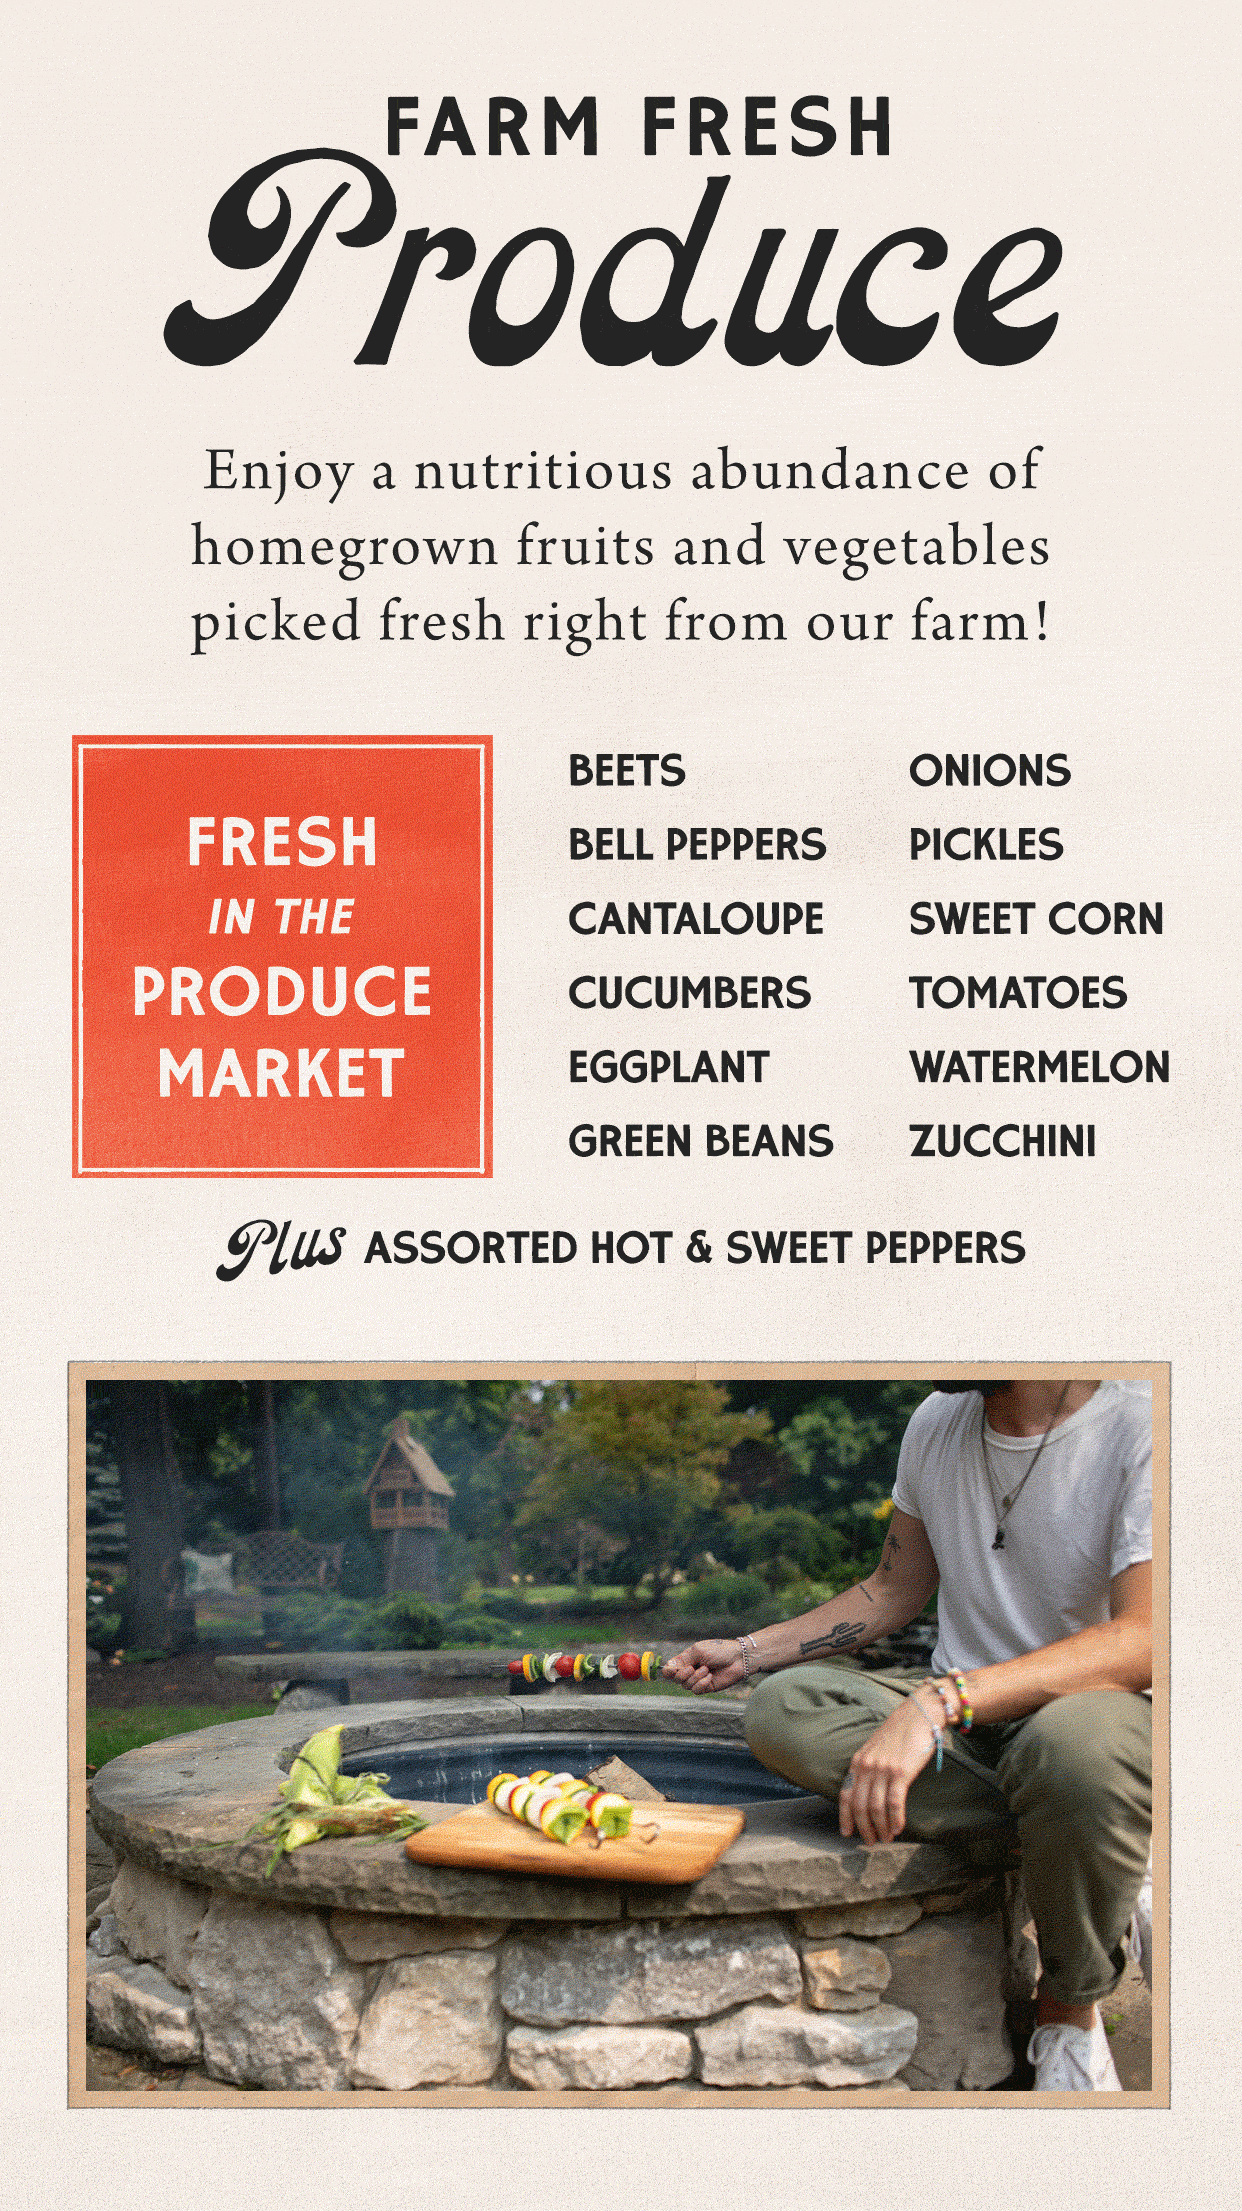 Farm Fresh Produce at Hoen's Garden Center